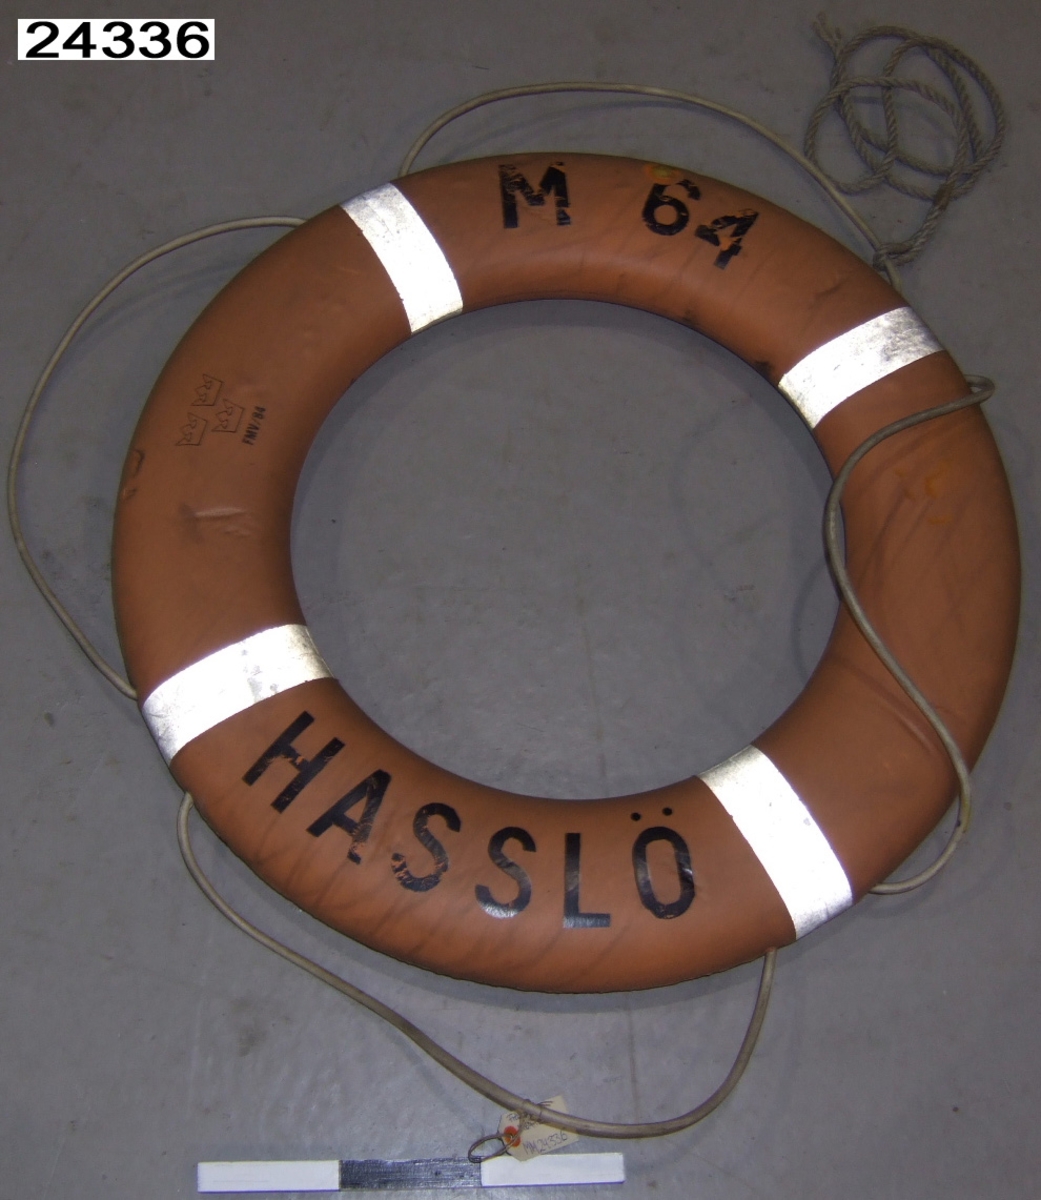 Orange frälsarkrans försedd med fyra reflexband och runtgående lina av gummi. Märkt "M 64, HASSLÖ", tre kronor och "FMV/84, M7383-204030, FRISTAD-PLAST AB, 2009/79" i svart.